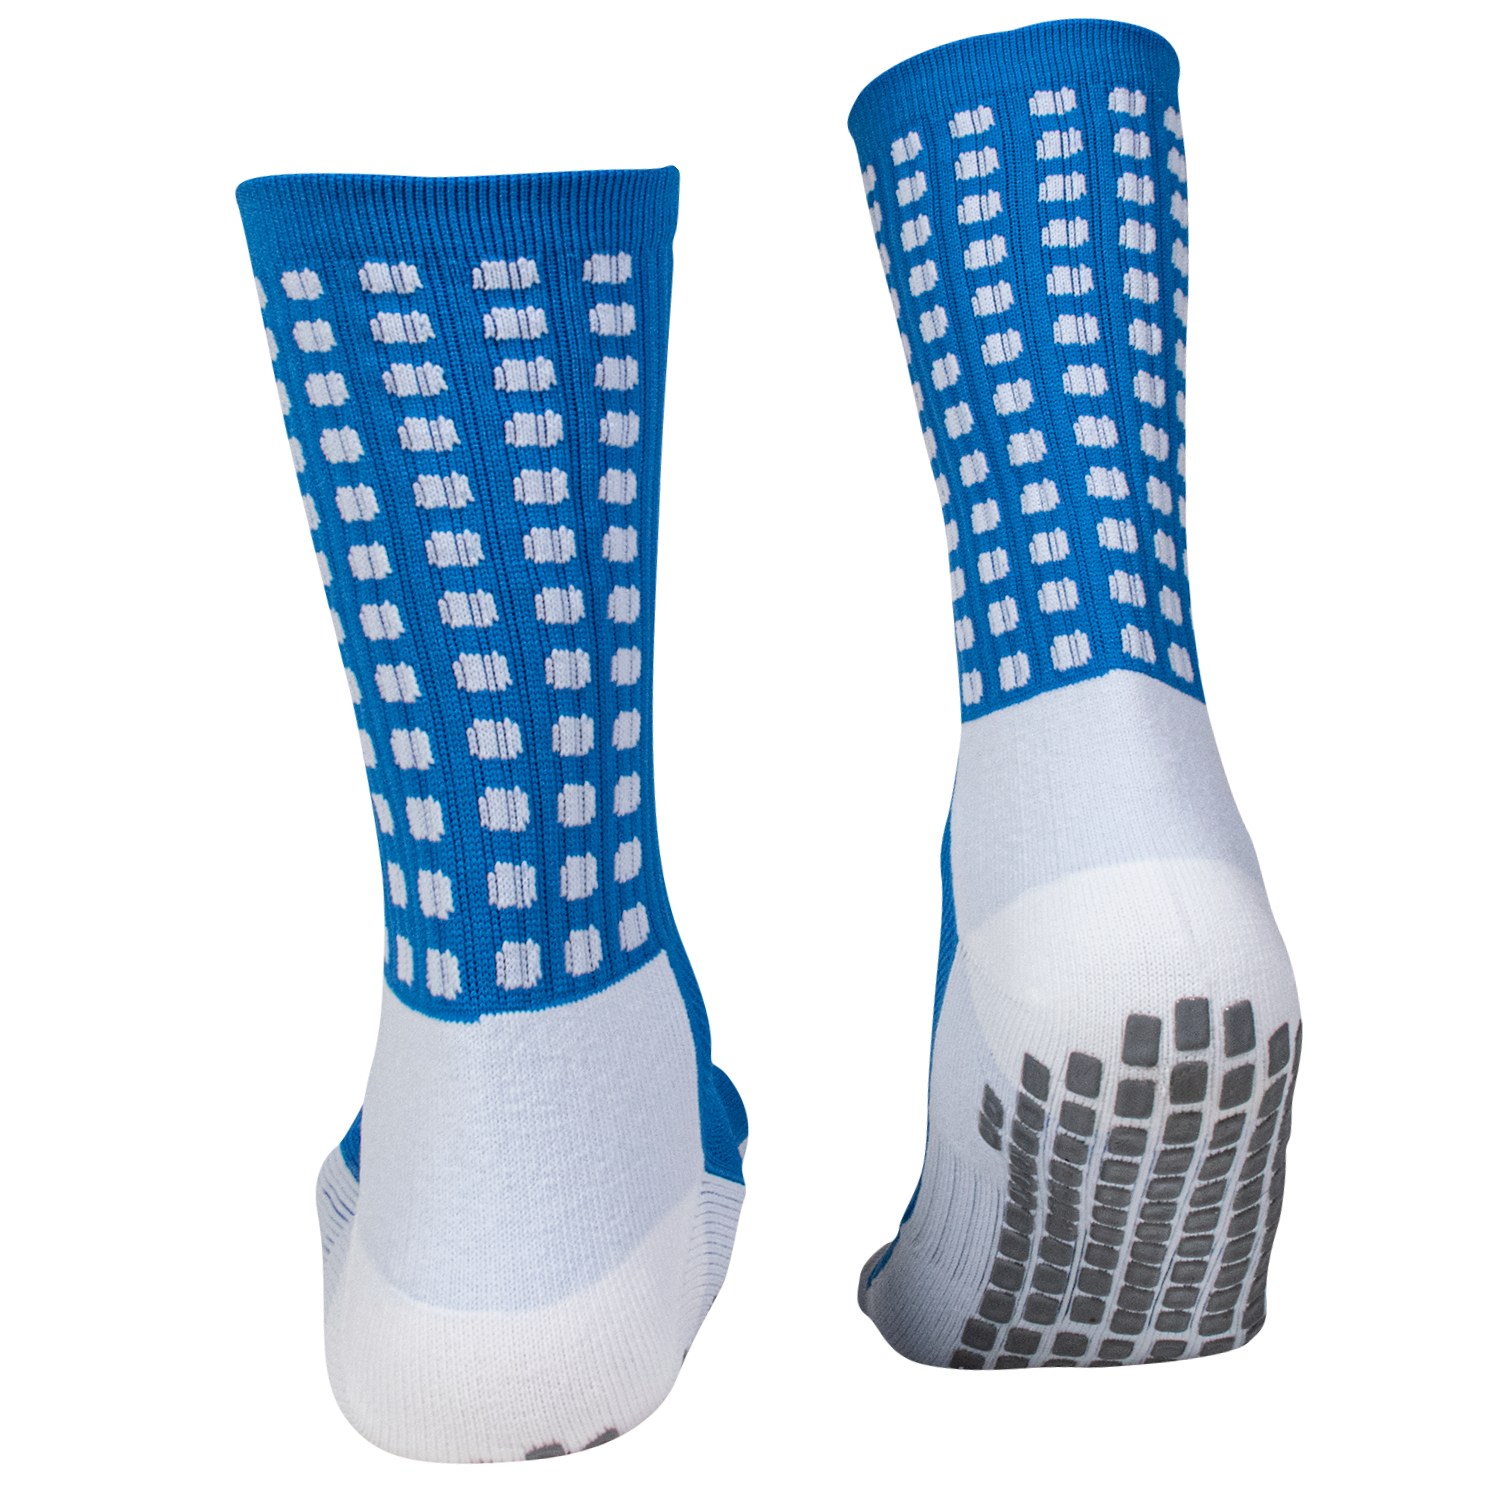 Grip Socks by Gekosox 6